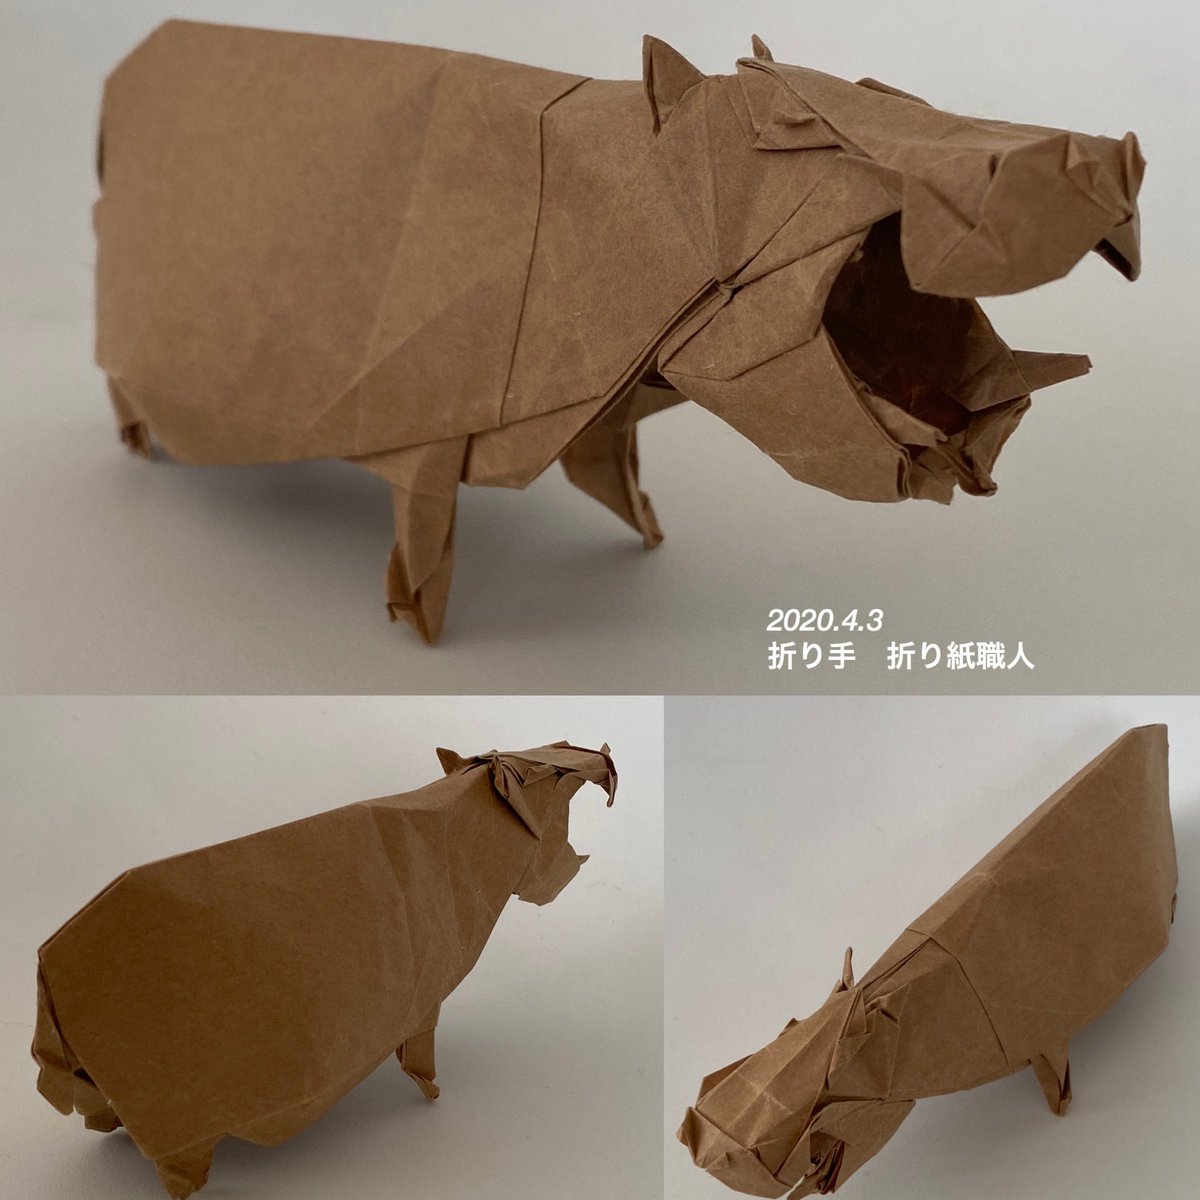 折り紙職人 ユ テヨンさん Qpemfh95yong の カバ Hippopotamus Yoo Tae Yong 30 ビオトープ使用 高雅な折り紙 より 最初 普通紙25 で折ったら薄くて小さくて上手くいかなかった 再折りしたけど まだまだ不満 難しいです 折り紙作品